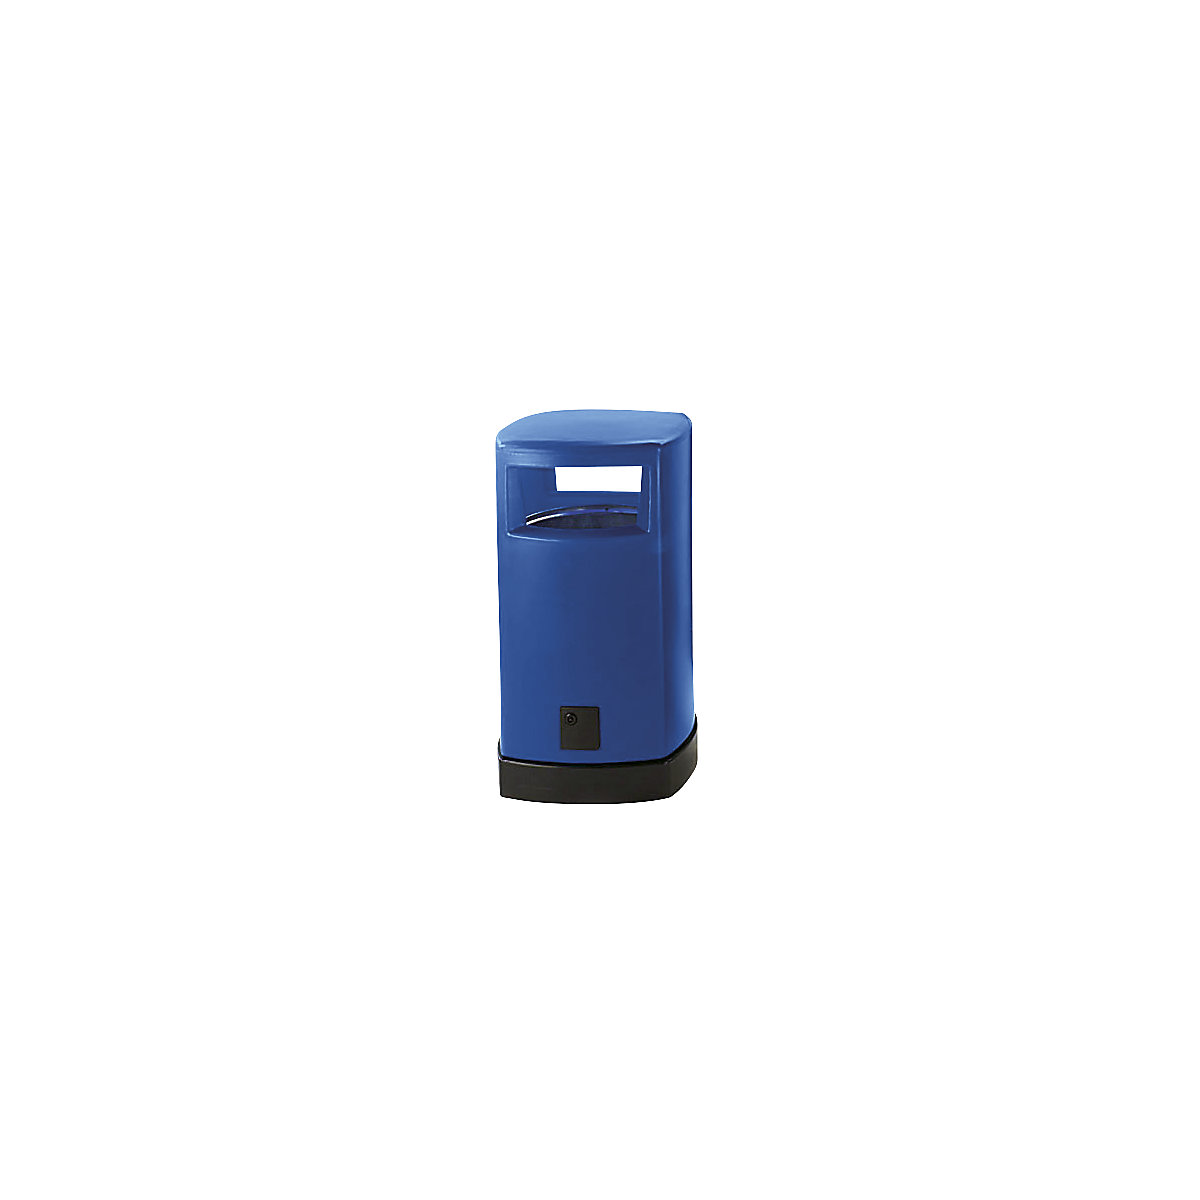 Afvalbak van kunststof voor buiten, inhoud 120 l, b x h x d = 580 x 1050 x 580 mm, blauw